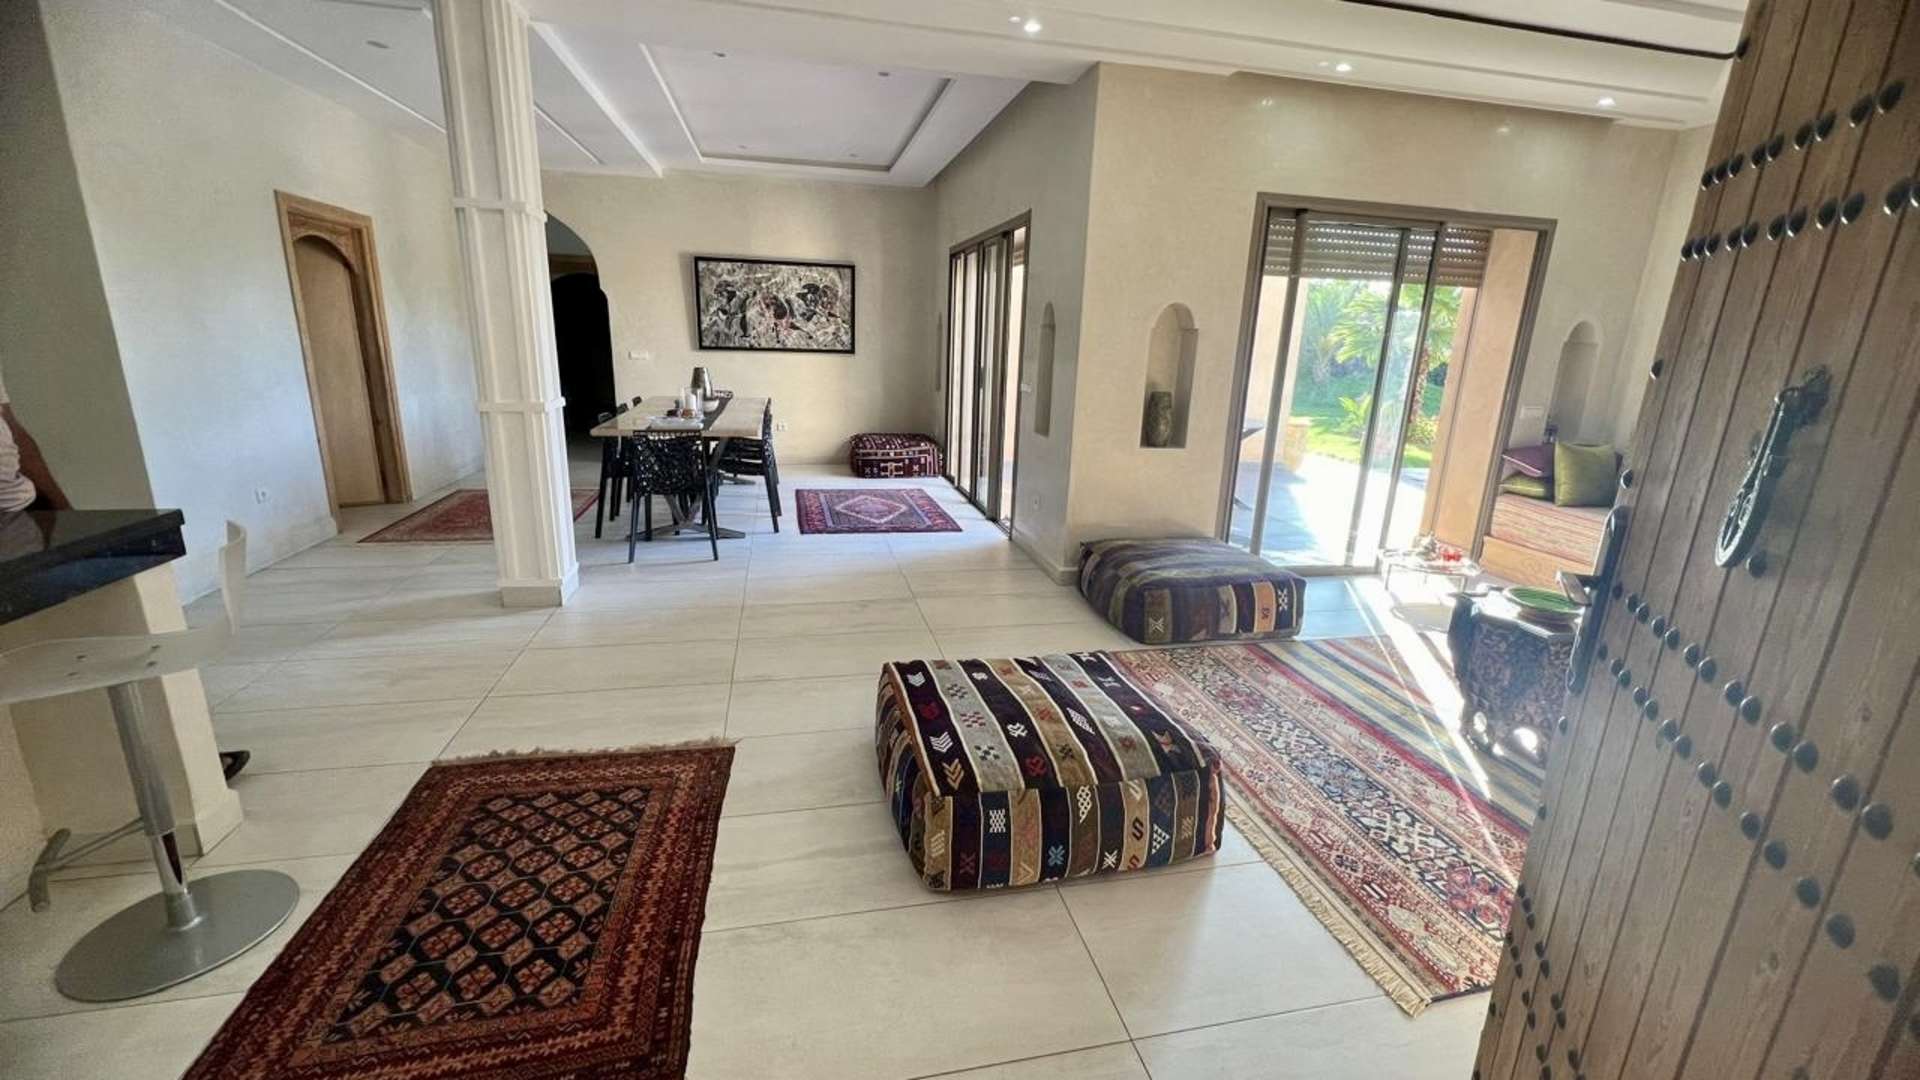 Vente,Villa,Magnifique opportunité de vente 2 villas sur 2500M2 à Marrakech,Marrakech,Route de Fès